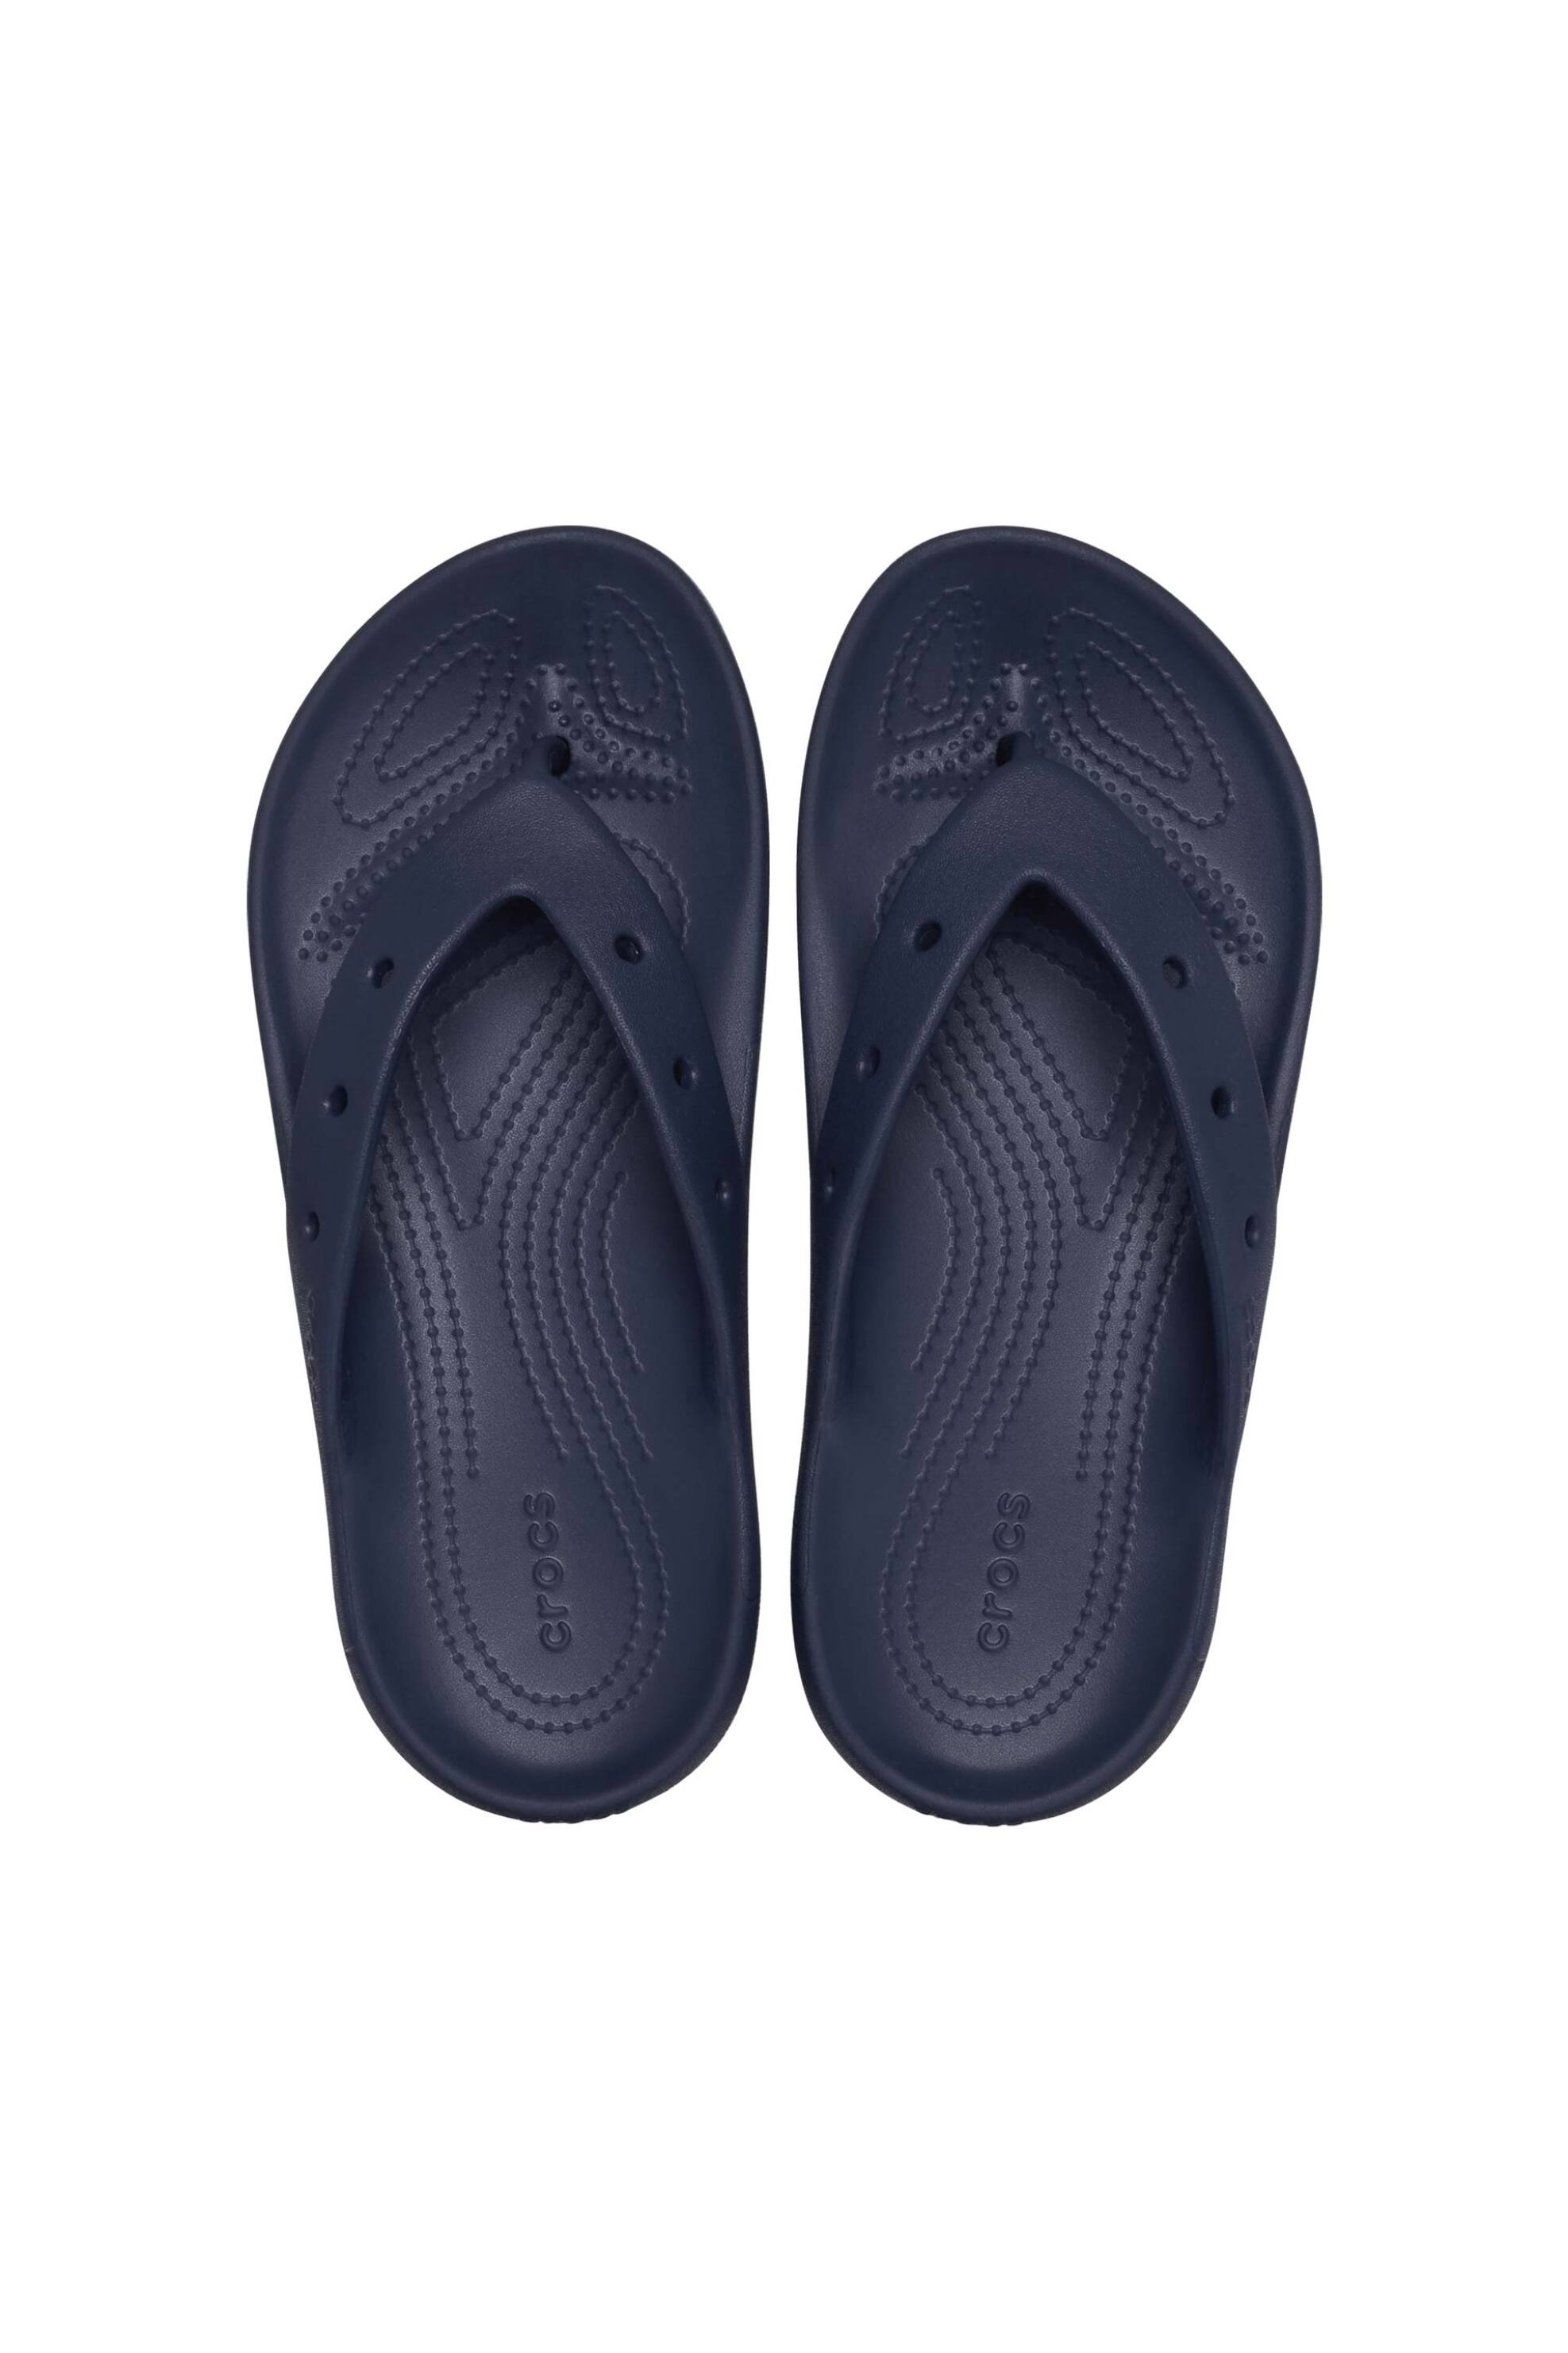 Ανδρική Μόδα > Ανδρικά Παπούτσια > Ανδρικές Παντόφλες & Σαγιονάρες Crocs unisex σαγιονάρες "Classic Flip 2.0" - E61130 Μπλε Σκούρο